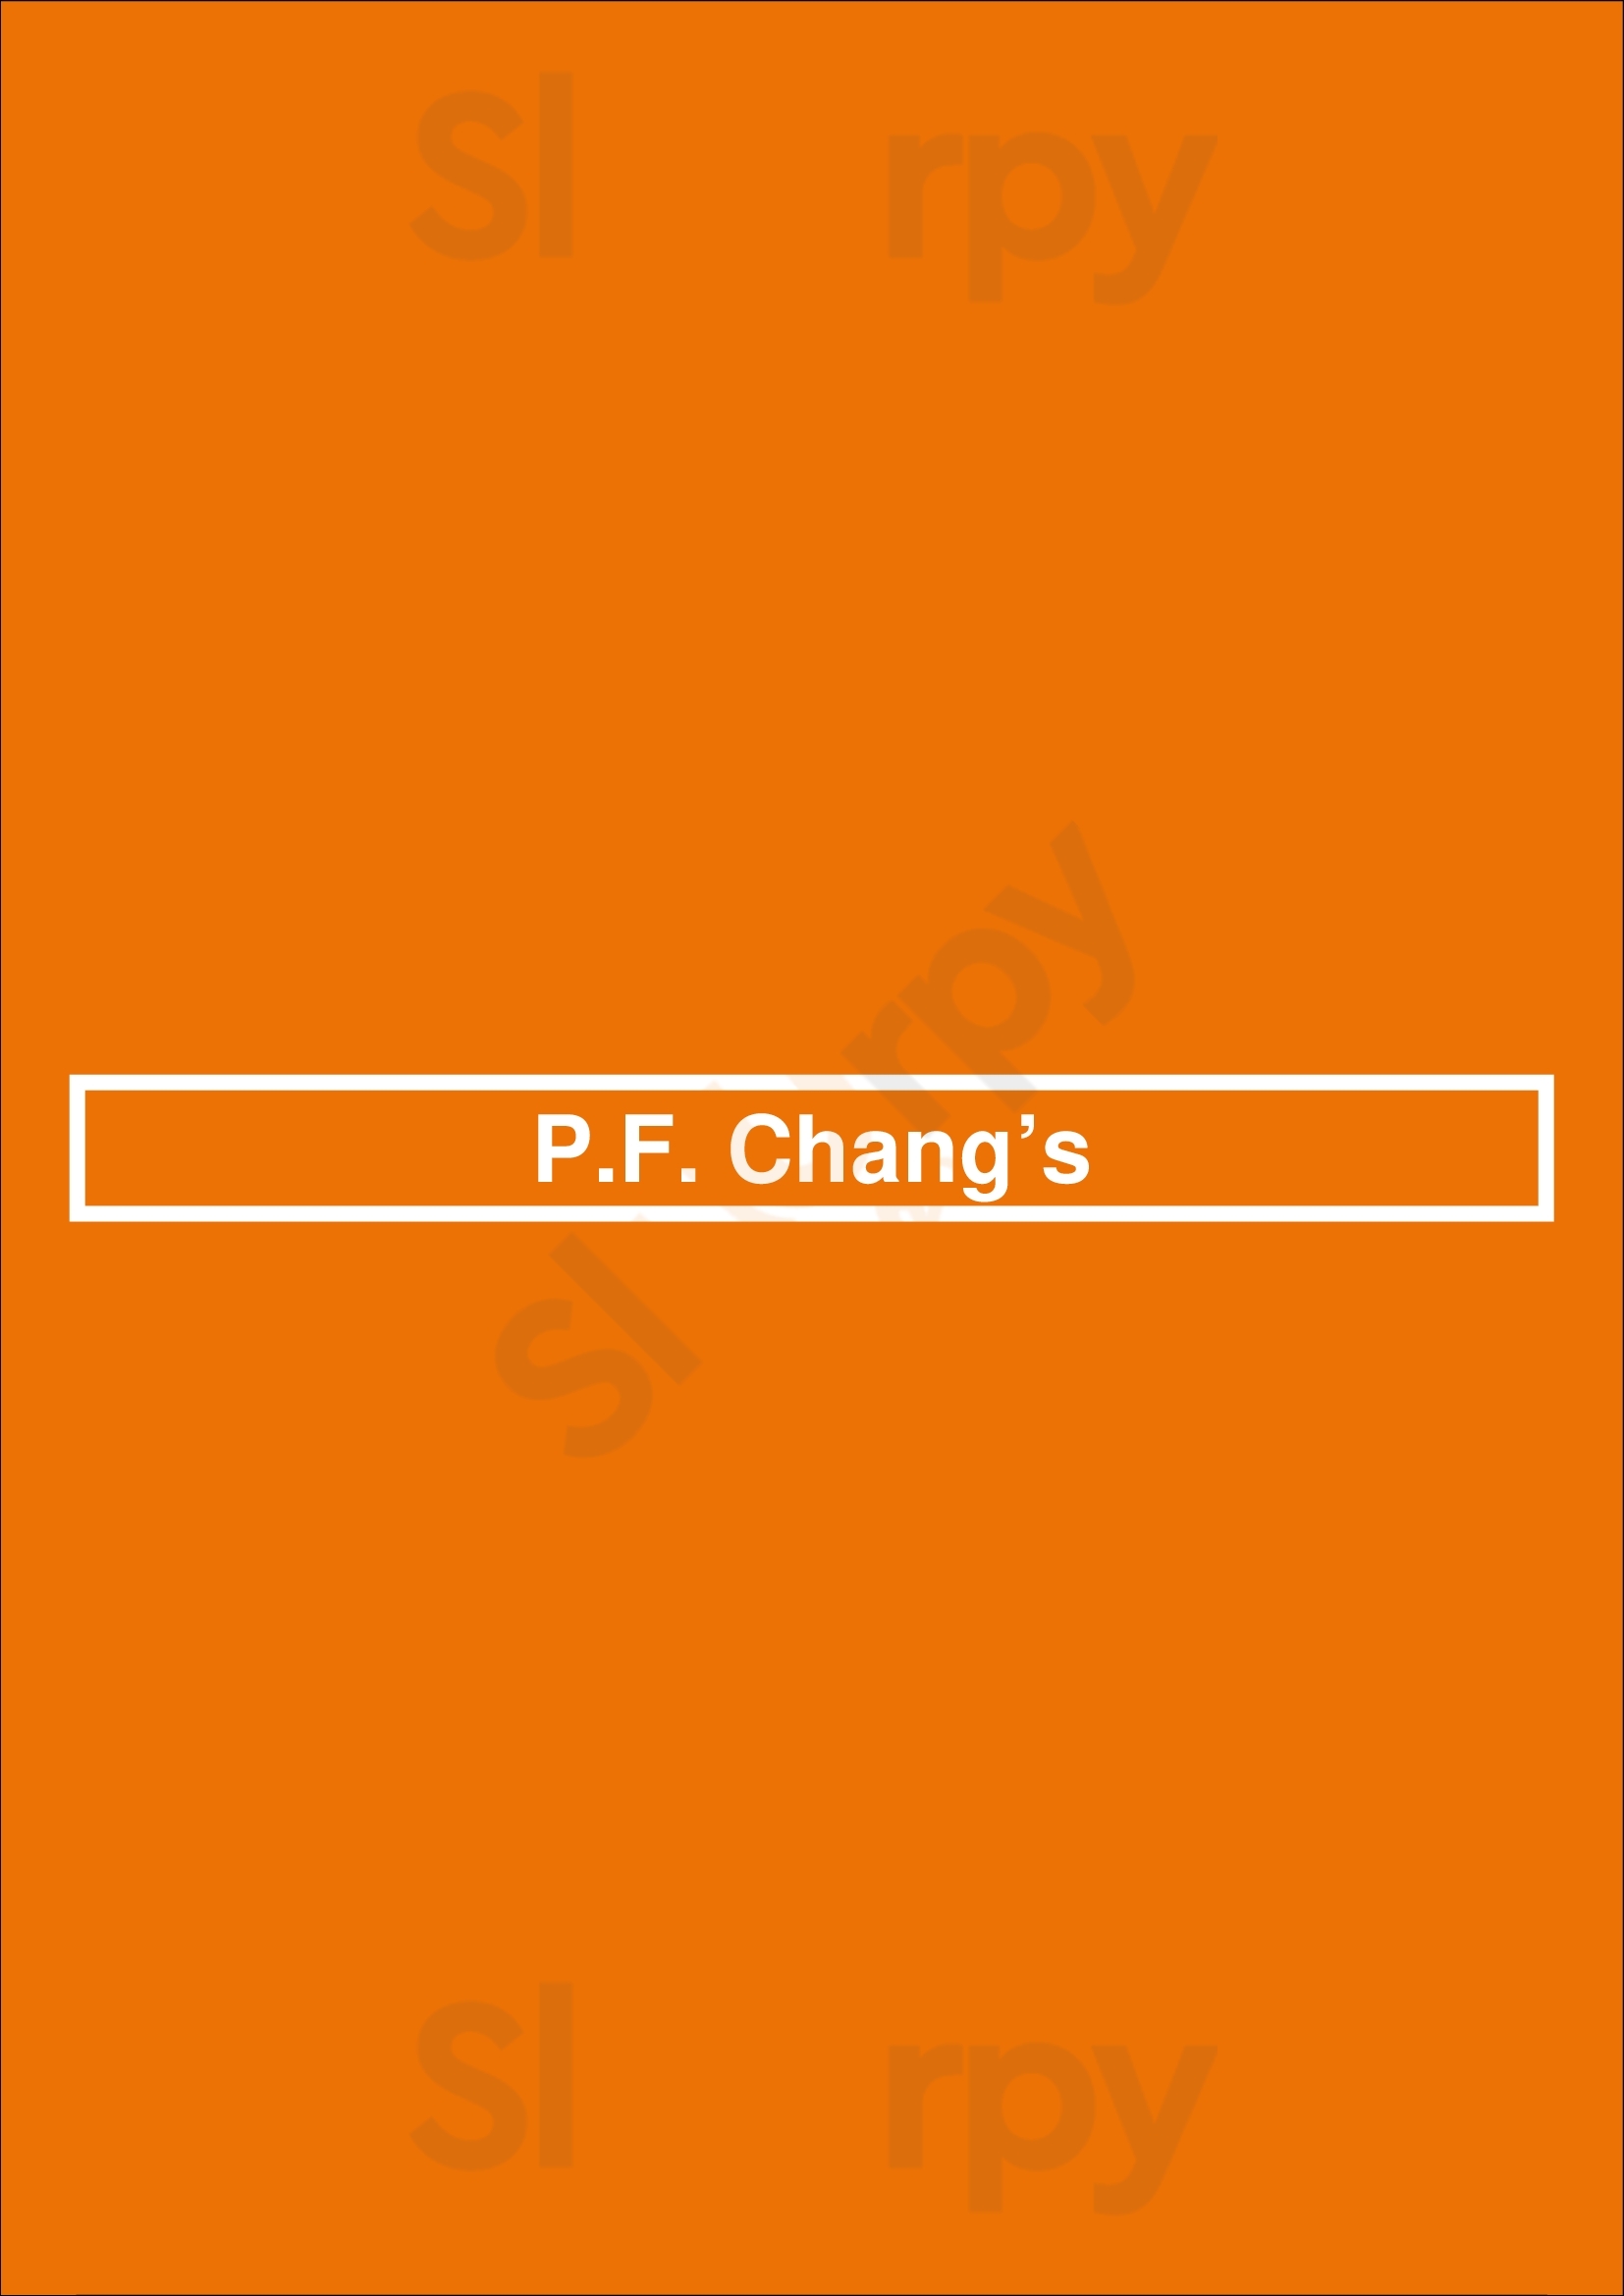 P.f. Chang's Indianapolis Menu - 1